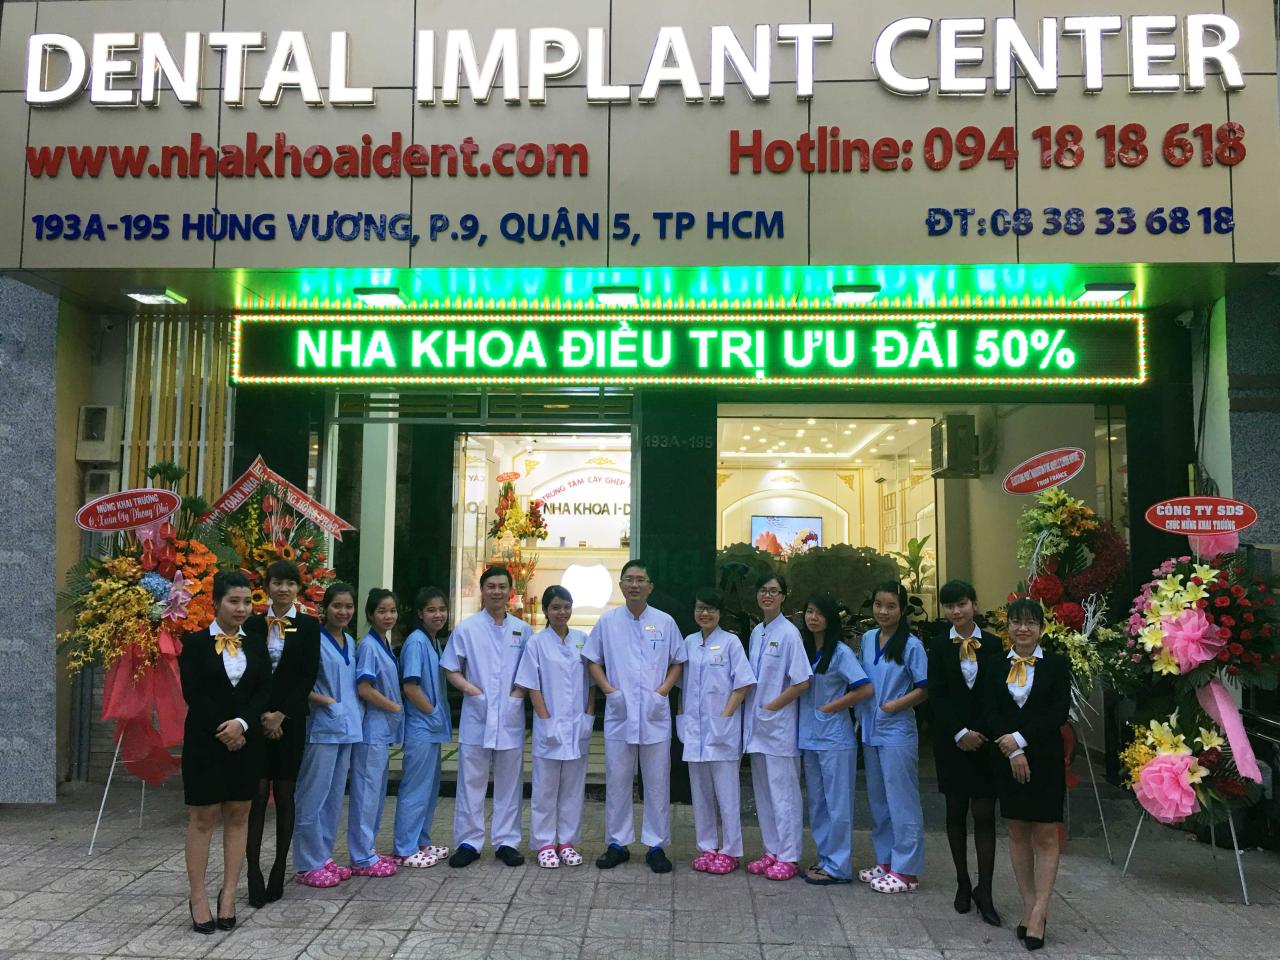 Trung tâm Cấy ghép Implant - Nha khoa I-DENT - Thông tin chi tiết